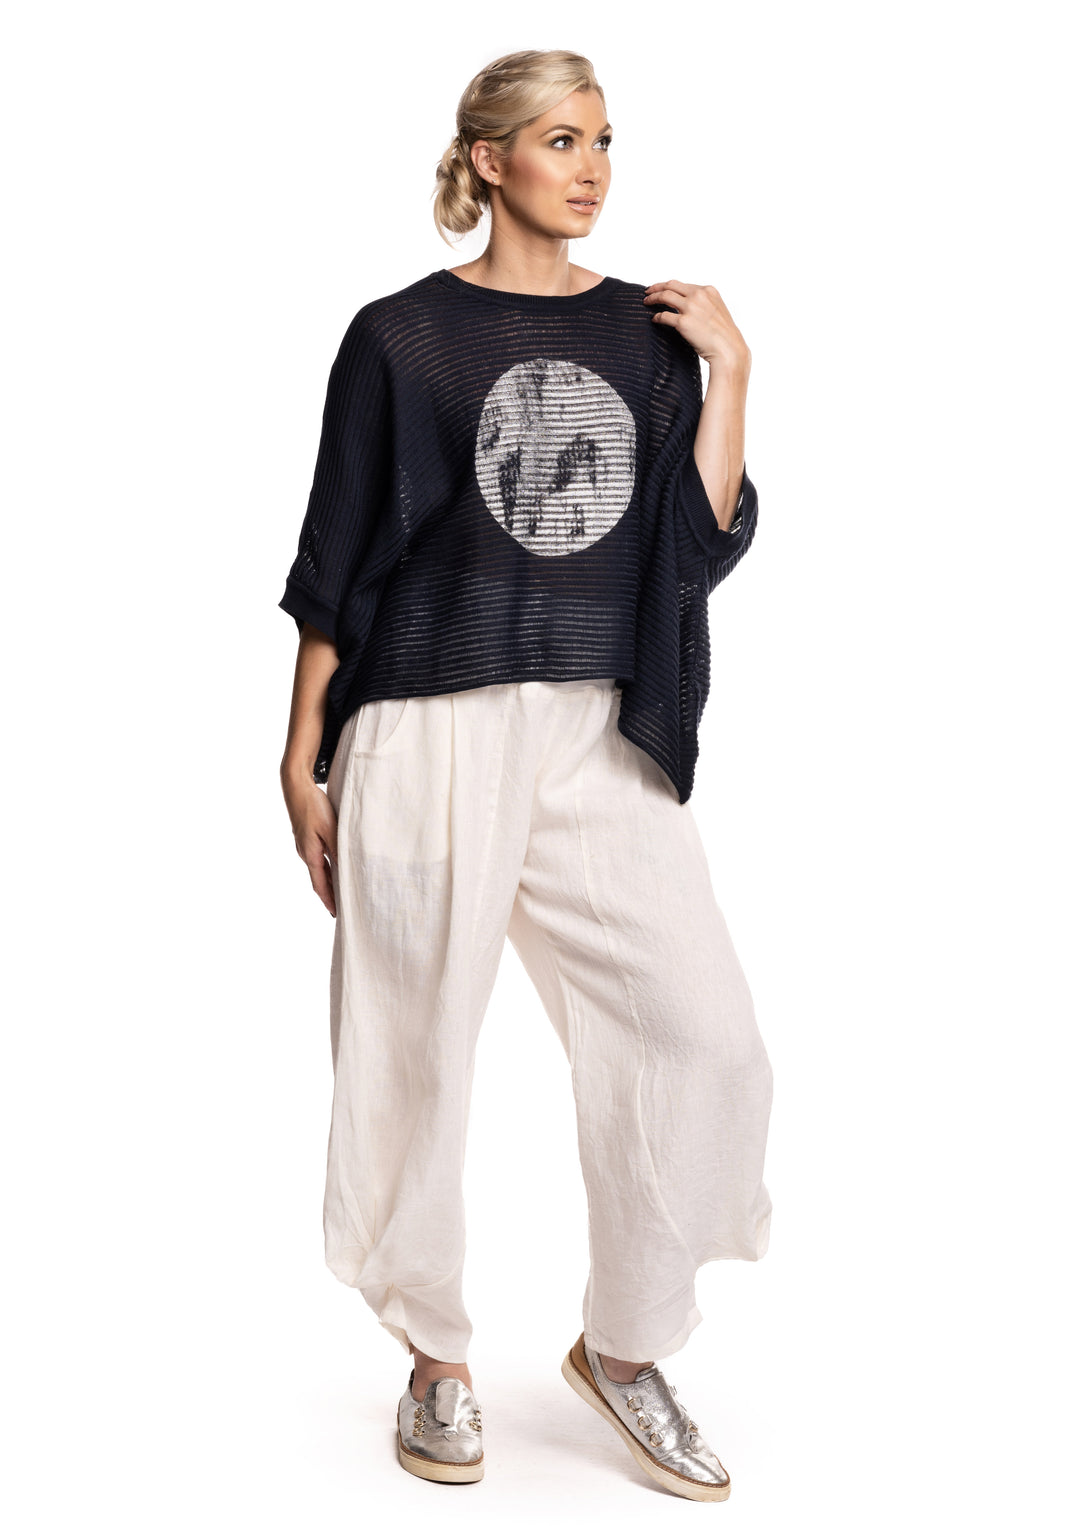 Rosanna Knit Top in Navy - Imagine Fashion